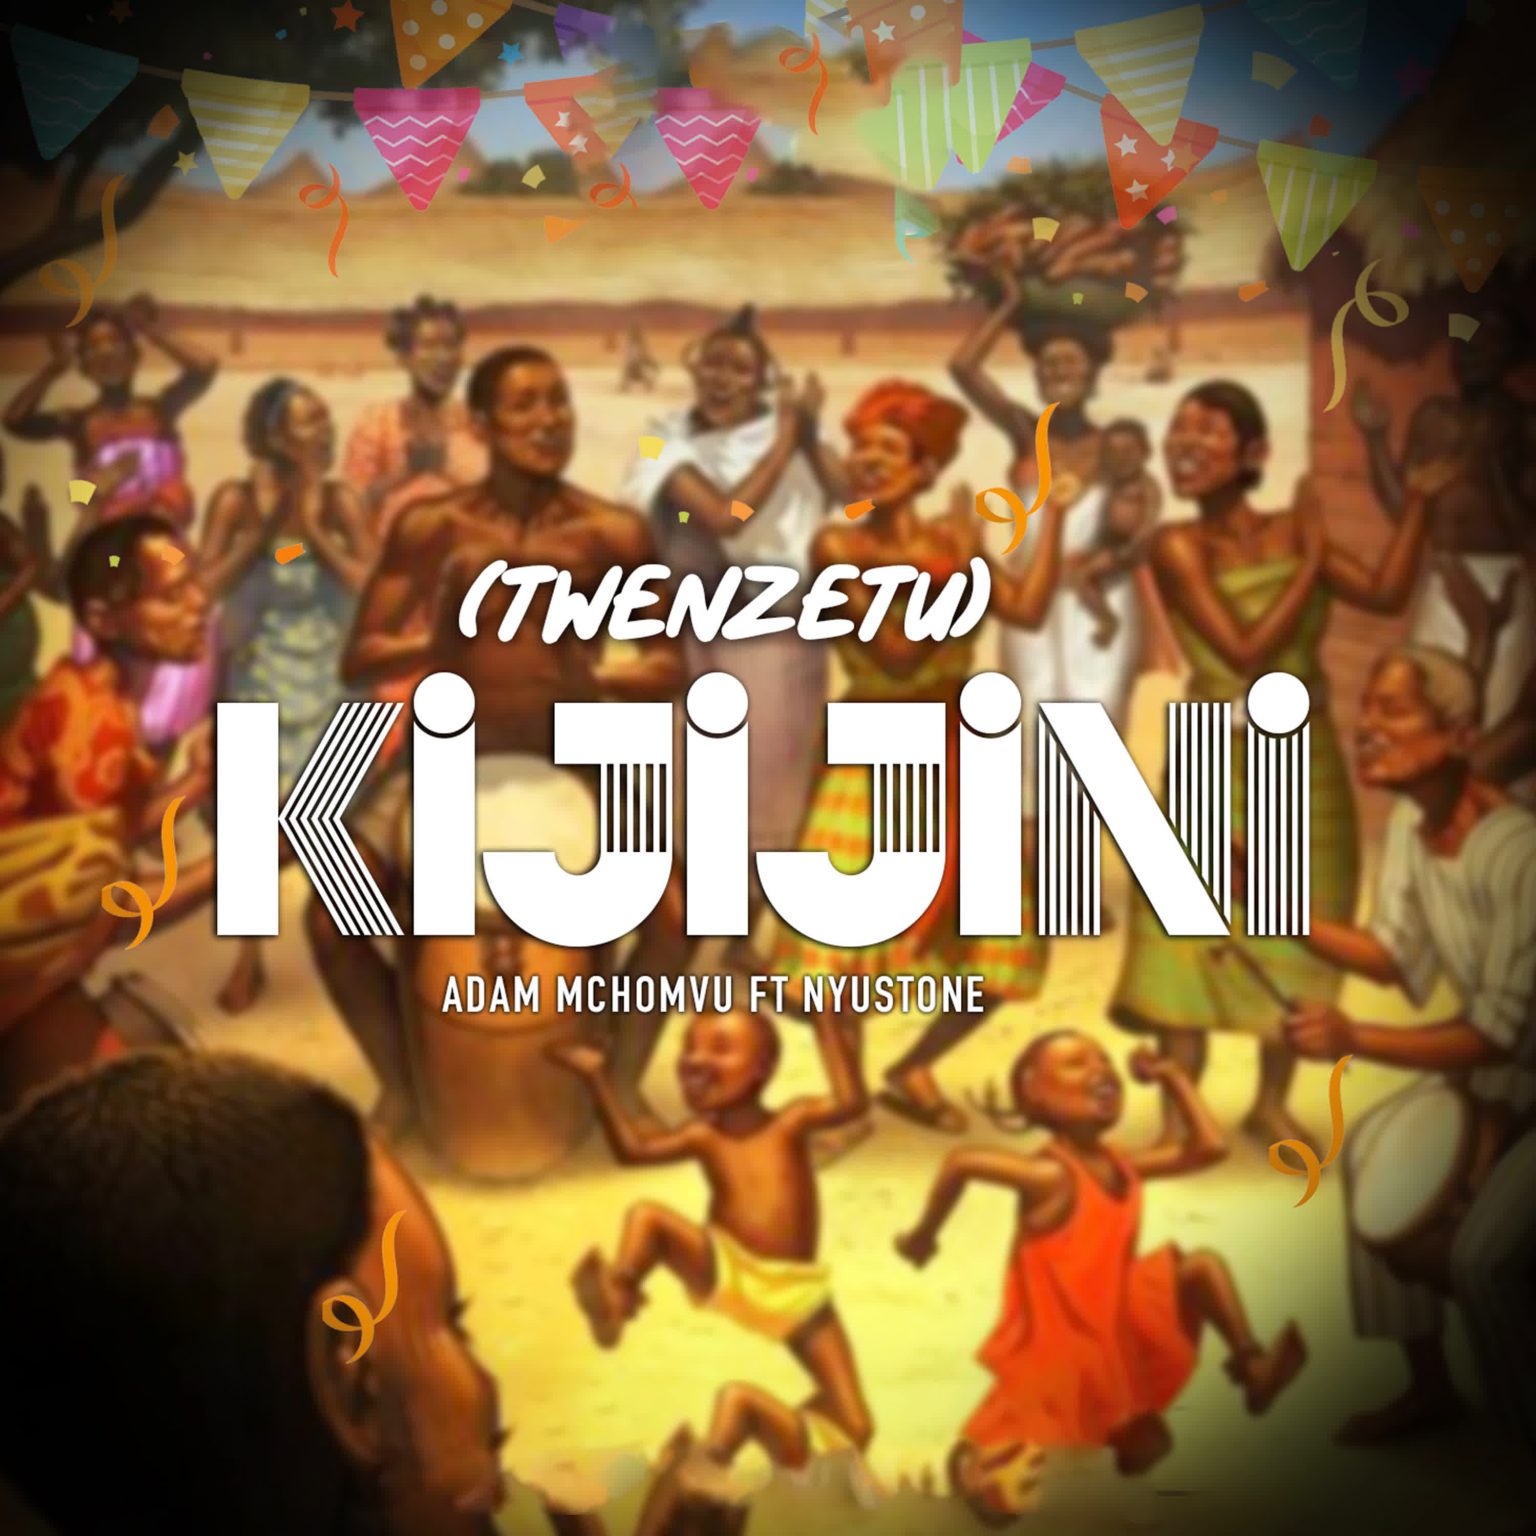 Download Audio | Adam Mchomvu Ft. Nyustone – Twenzetu Kijijini